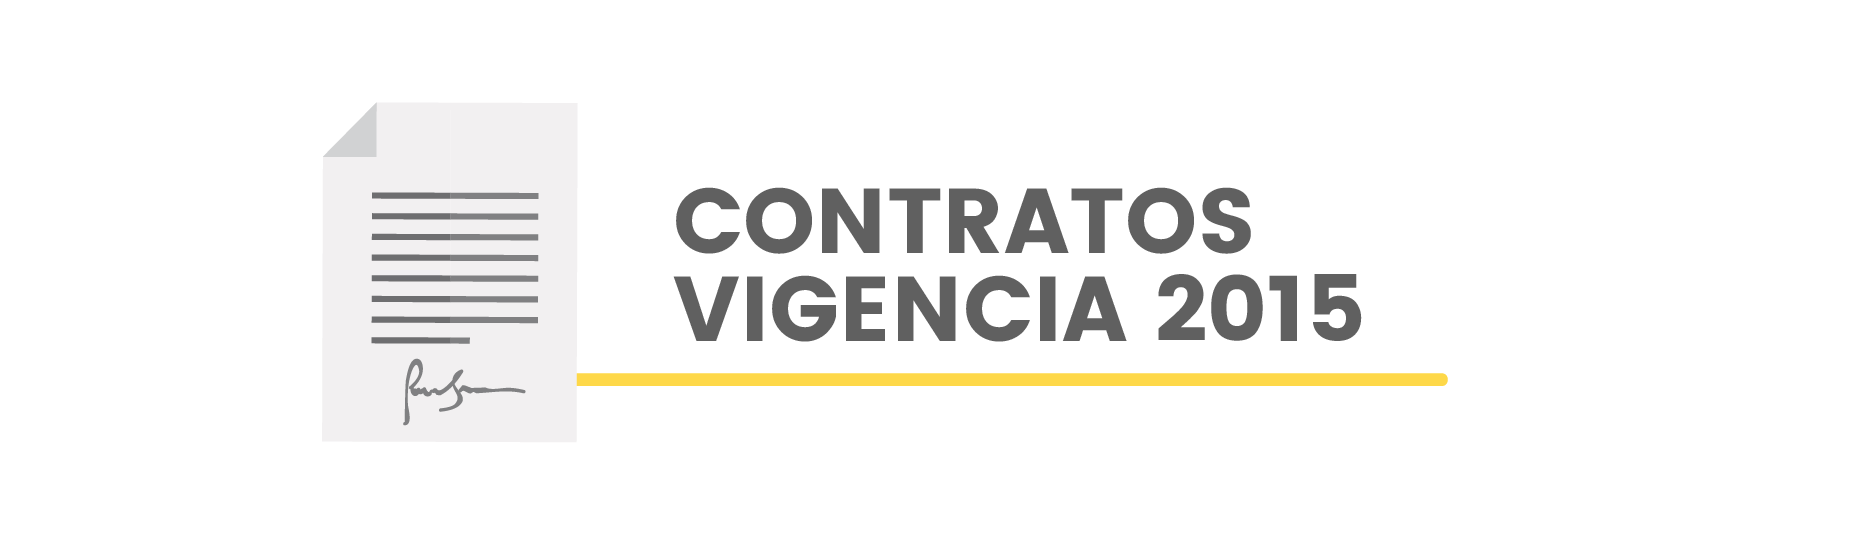 Contratos Vigencia 2015